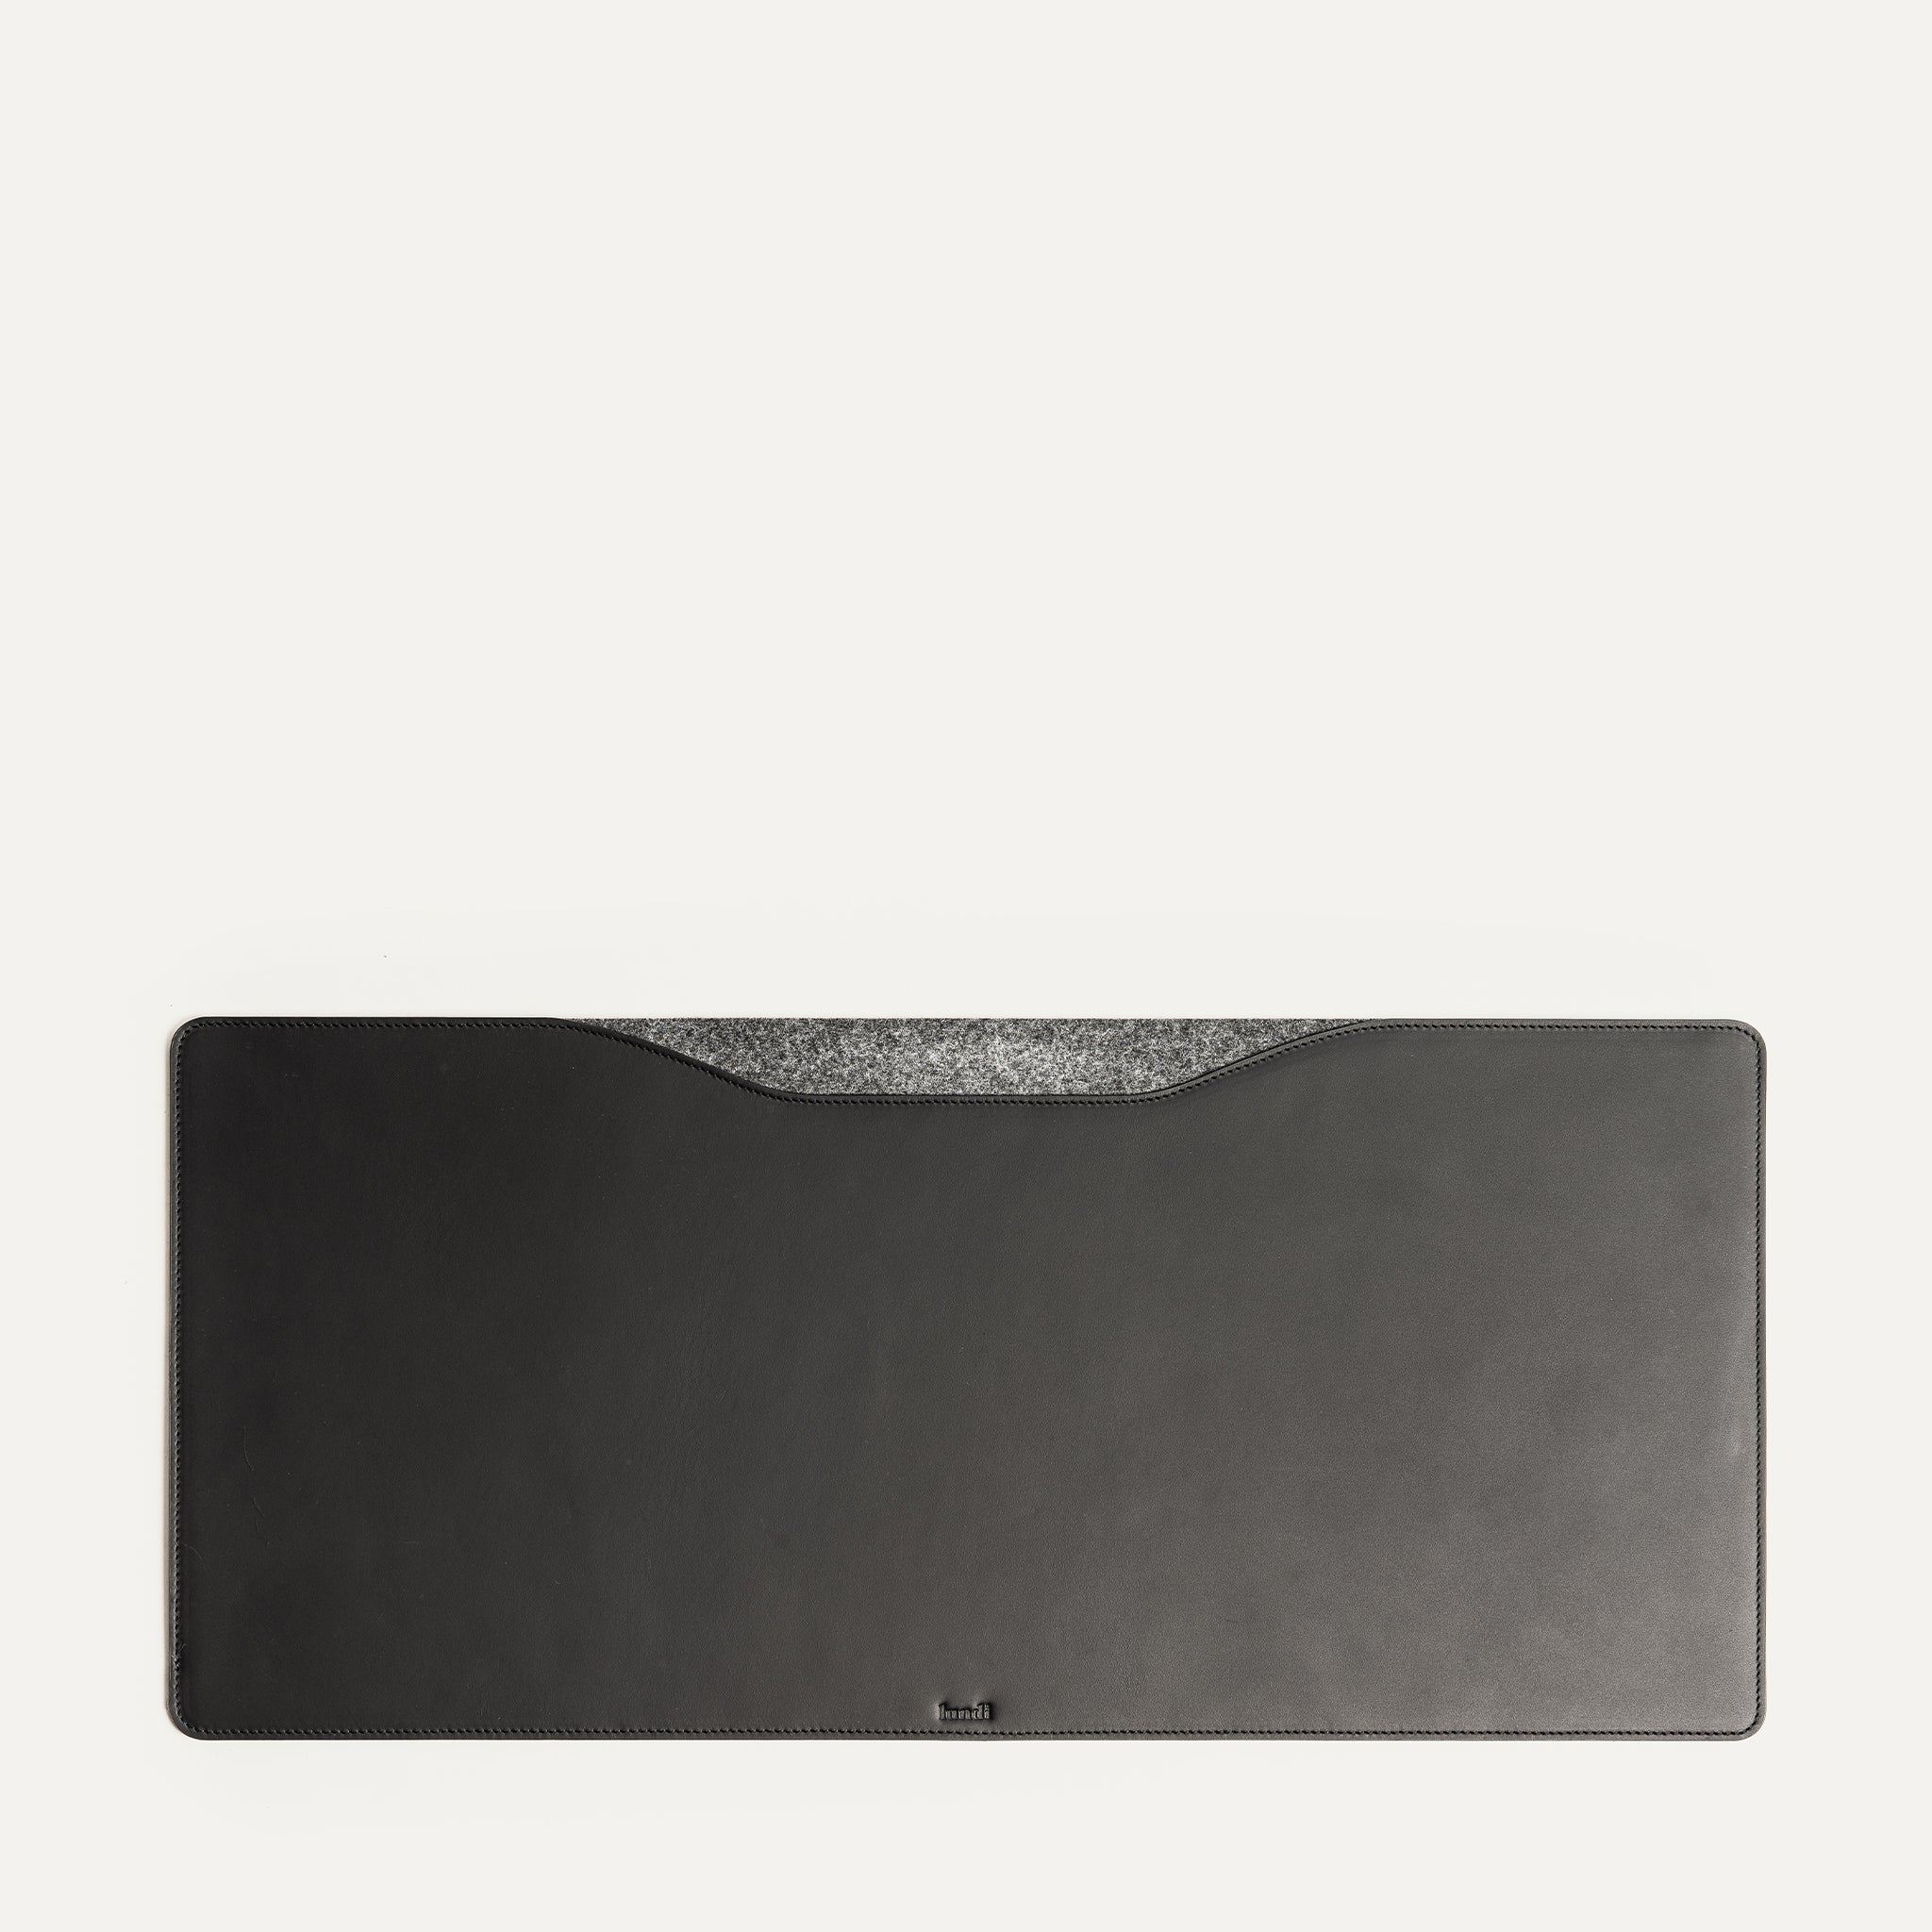 Leather Desk Mat - L Size | LILIO Black